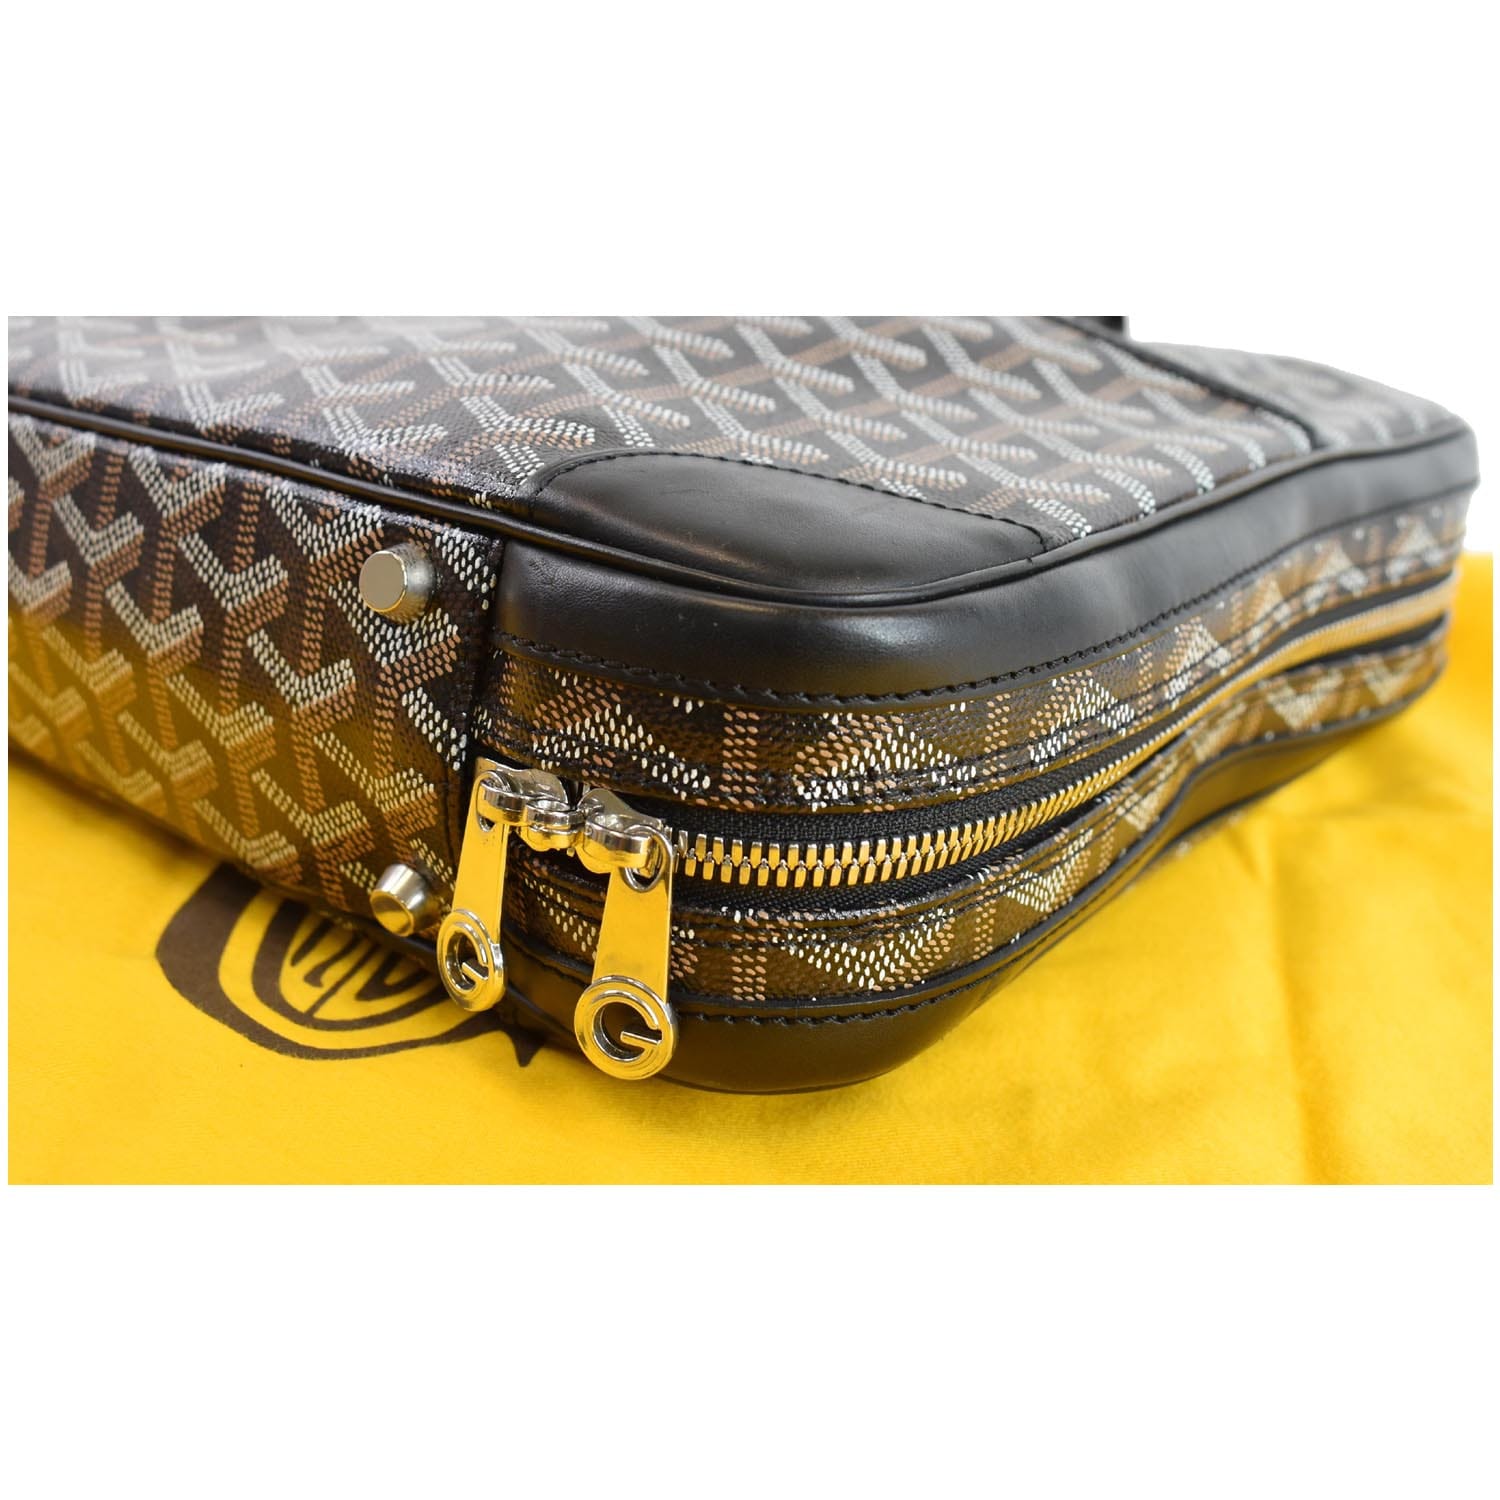 Goyard Ambassade Leather Canvas Business Bag Black Pm Briefcase Vintage